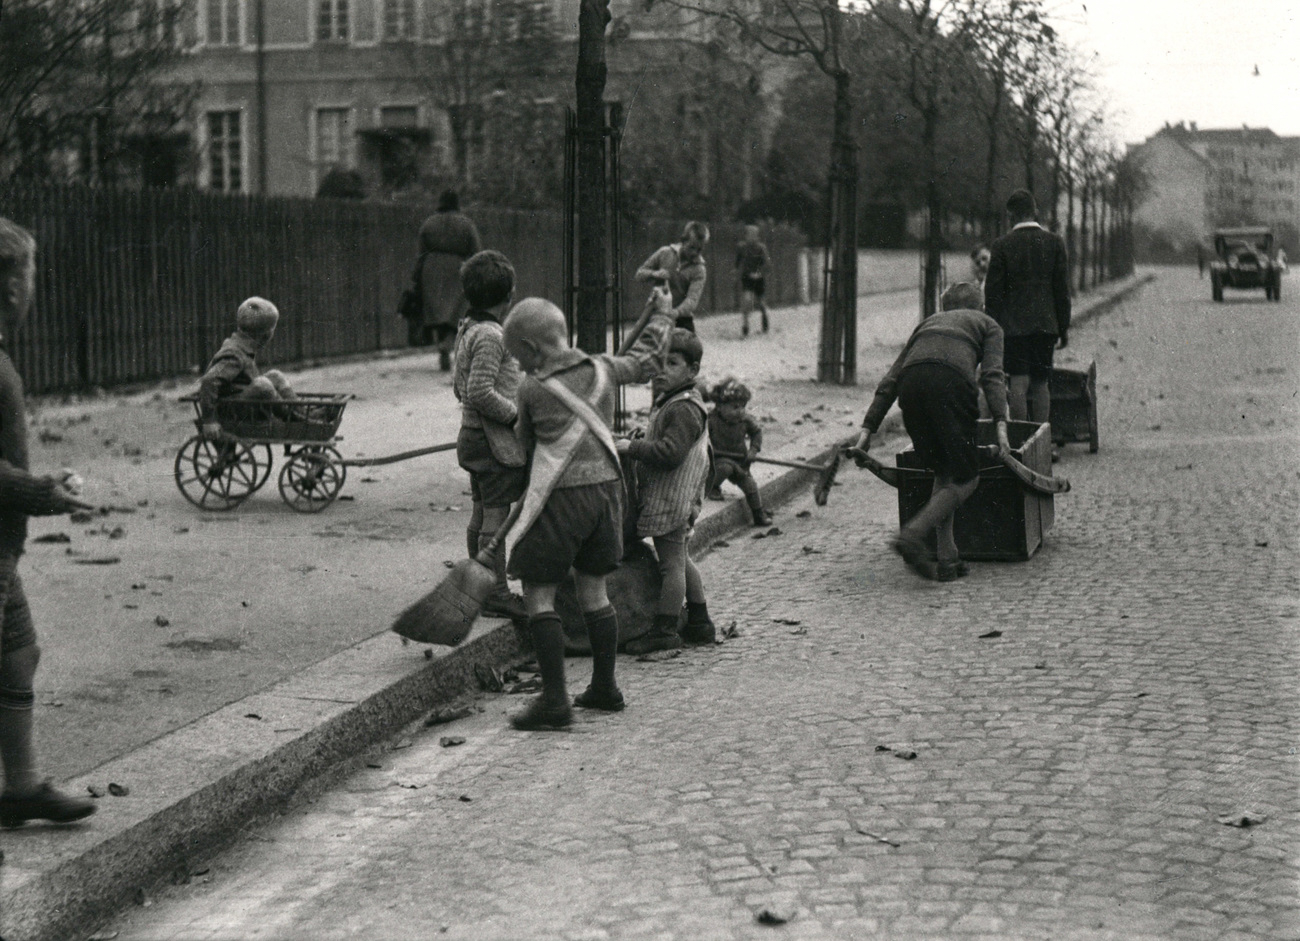 Children working in the street